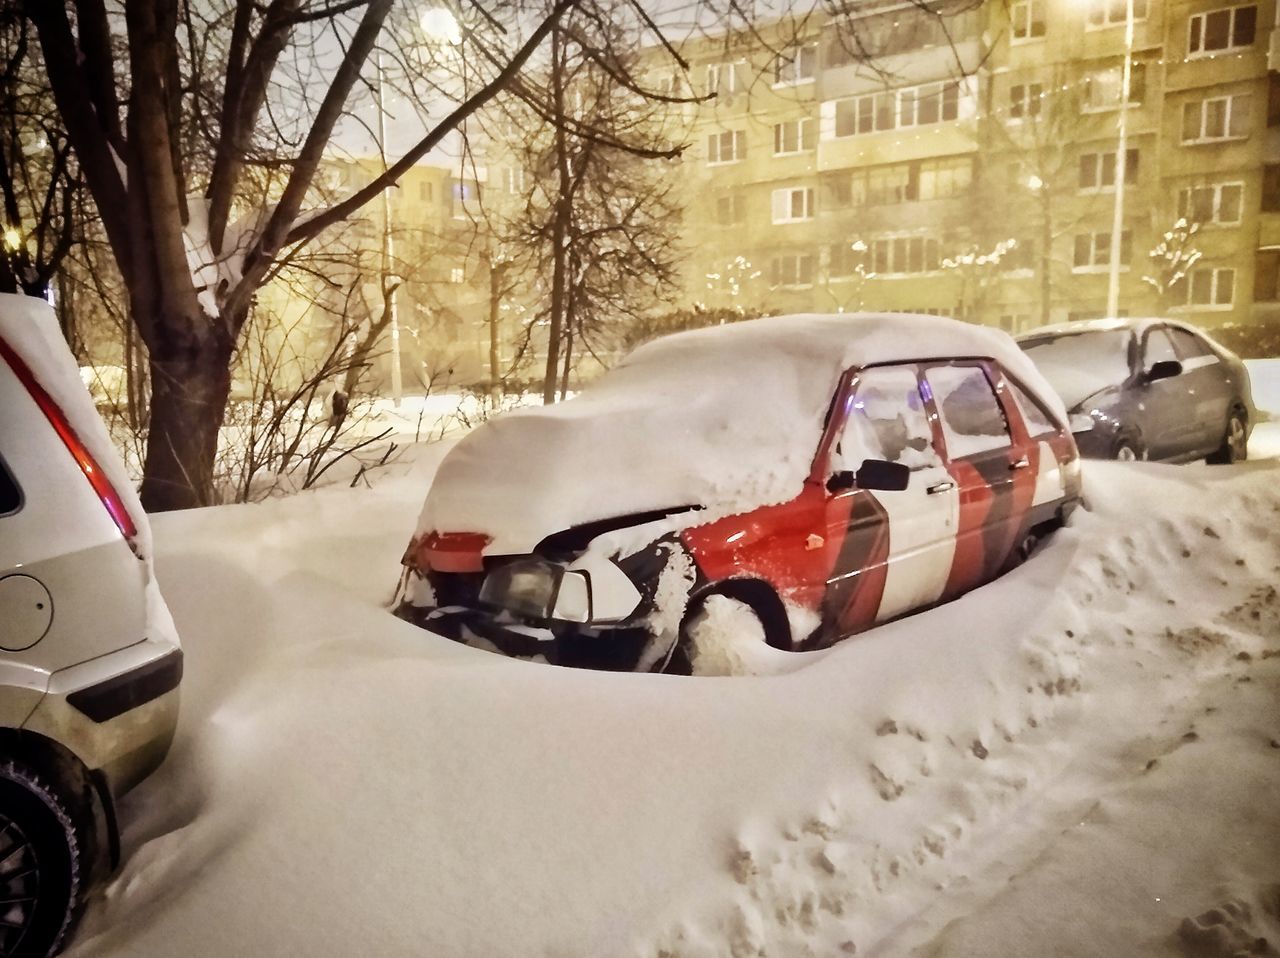 CAR IN SNOW